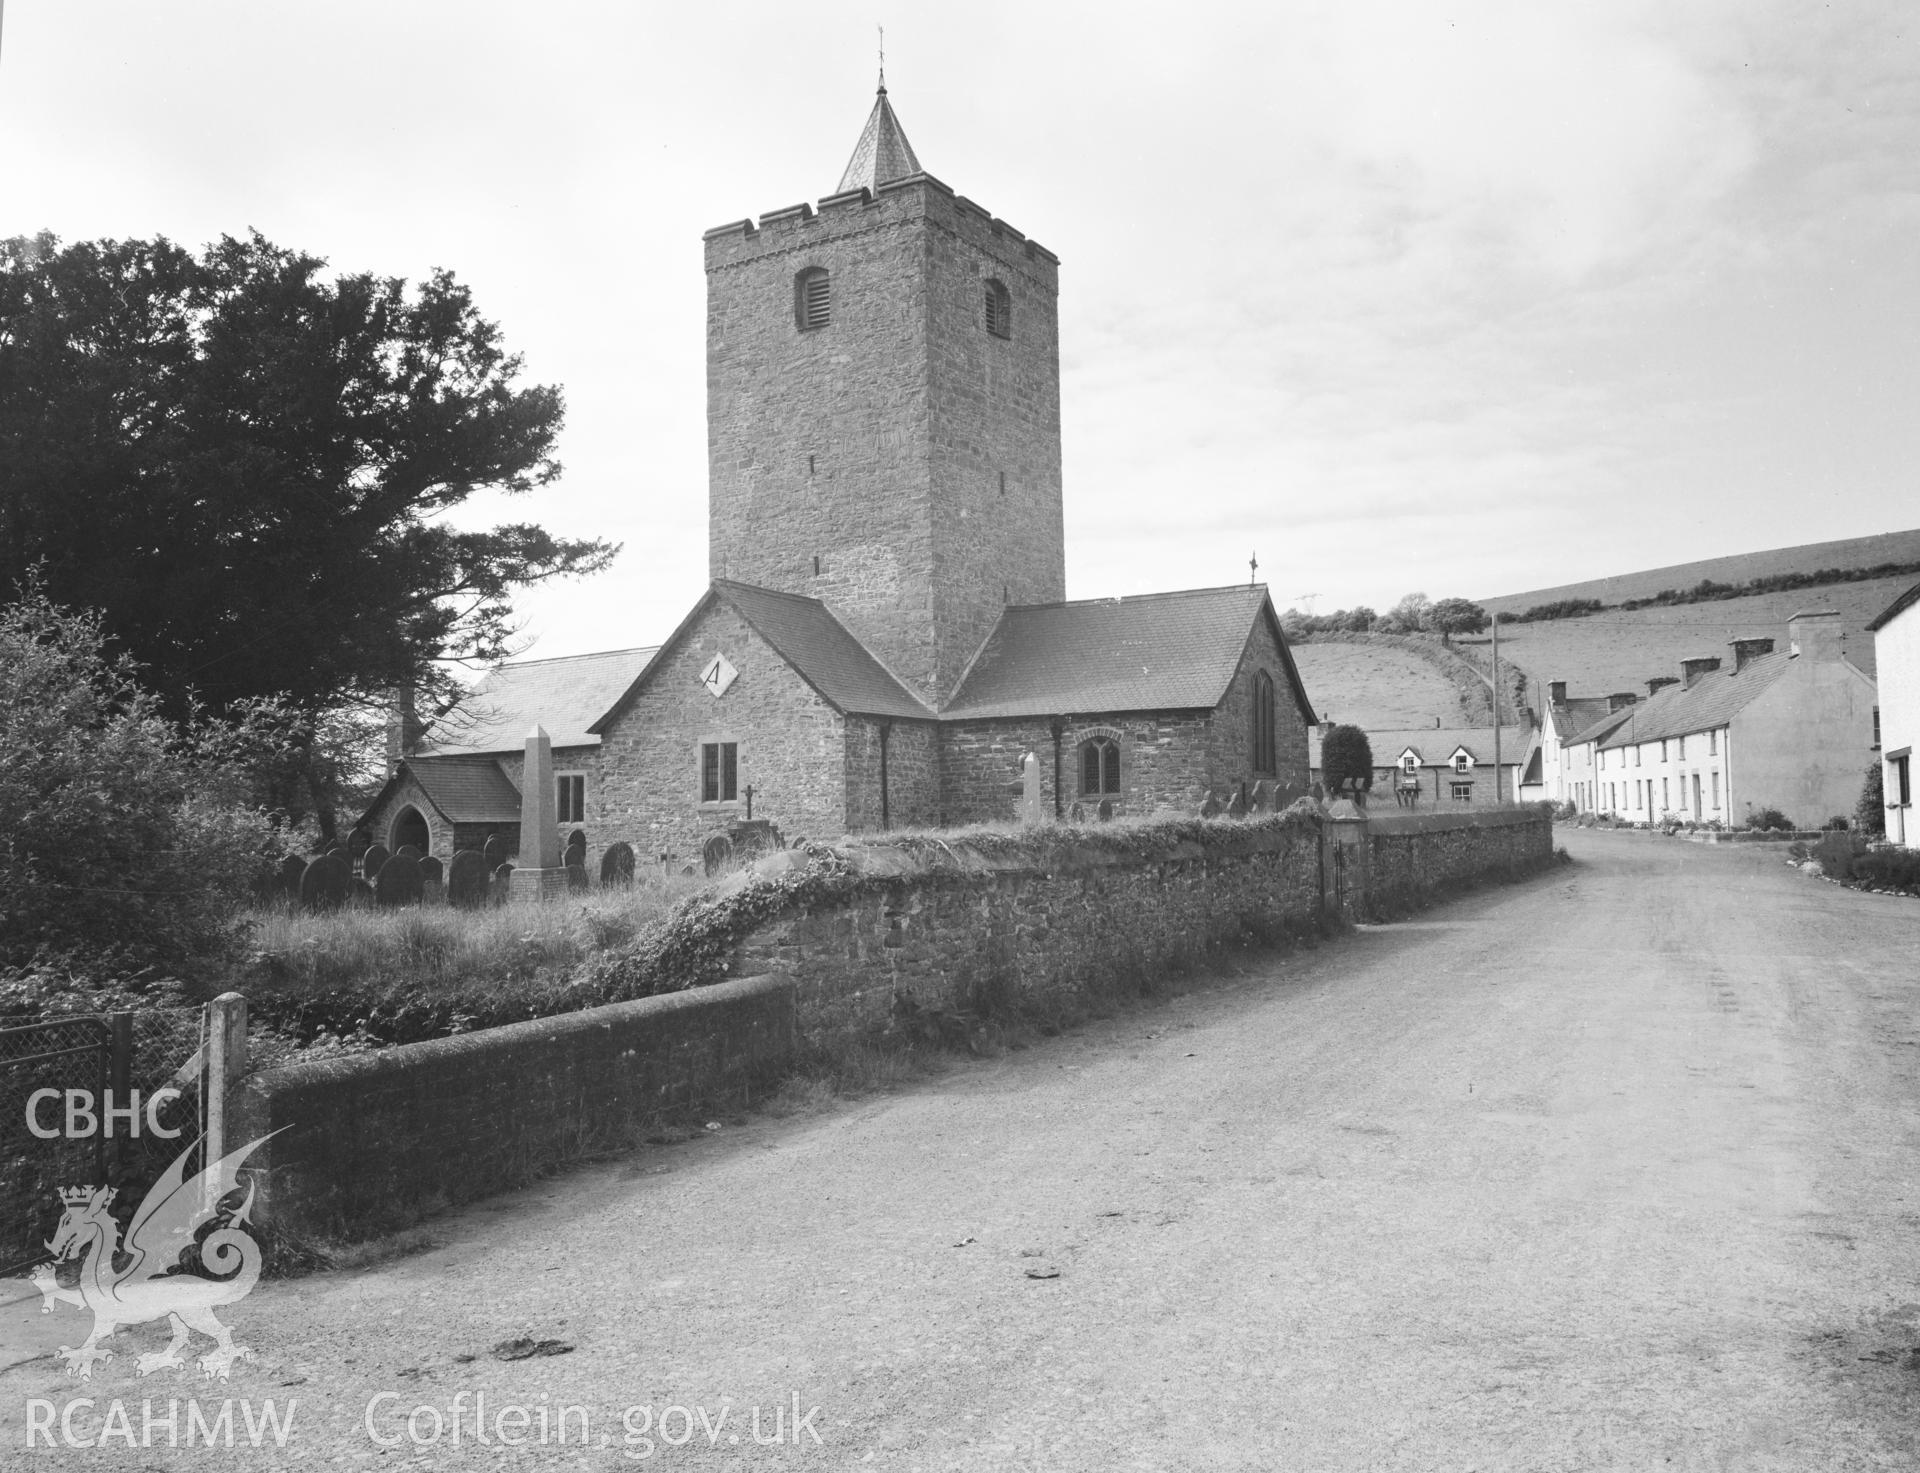 Digital copy of a view of St Michael's Church, Llanfihangel y Creuddyn.